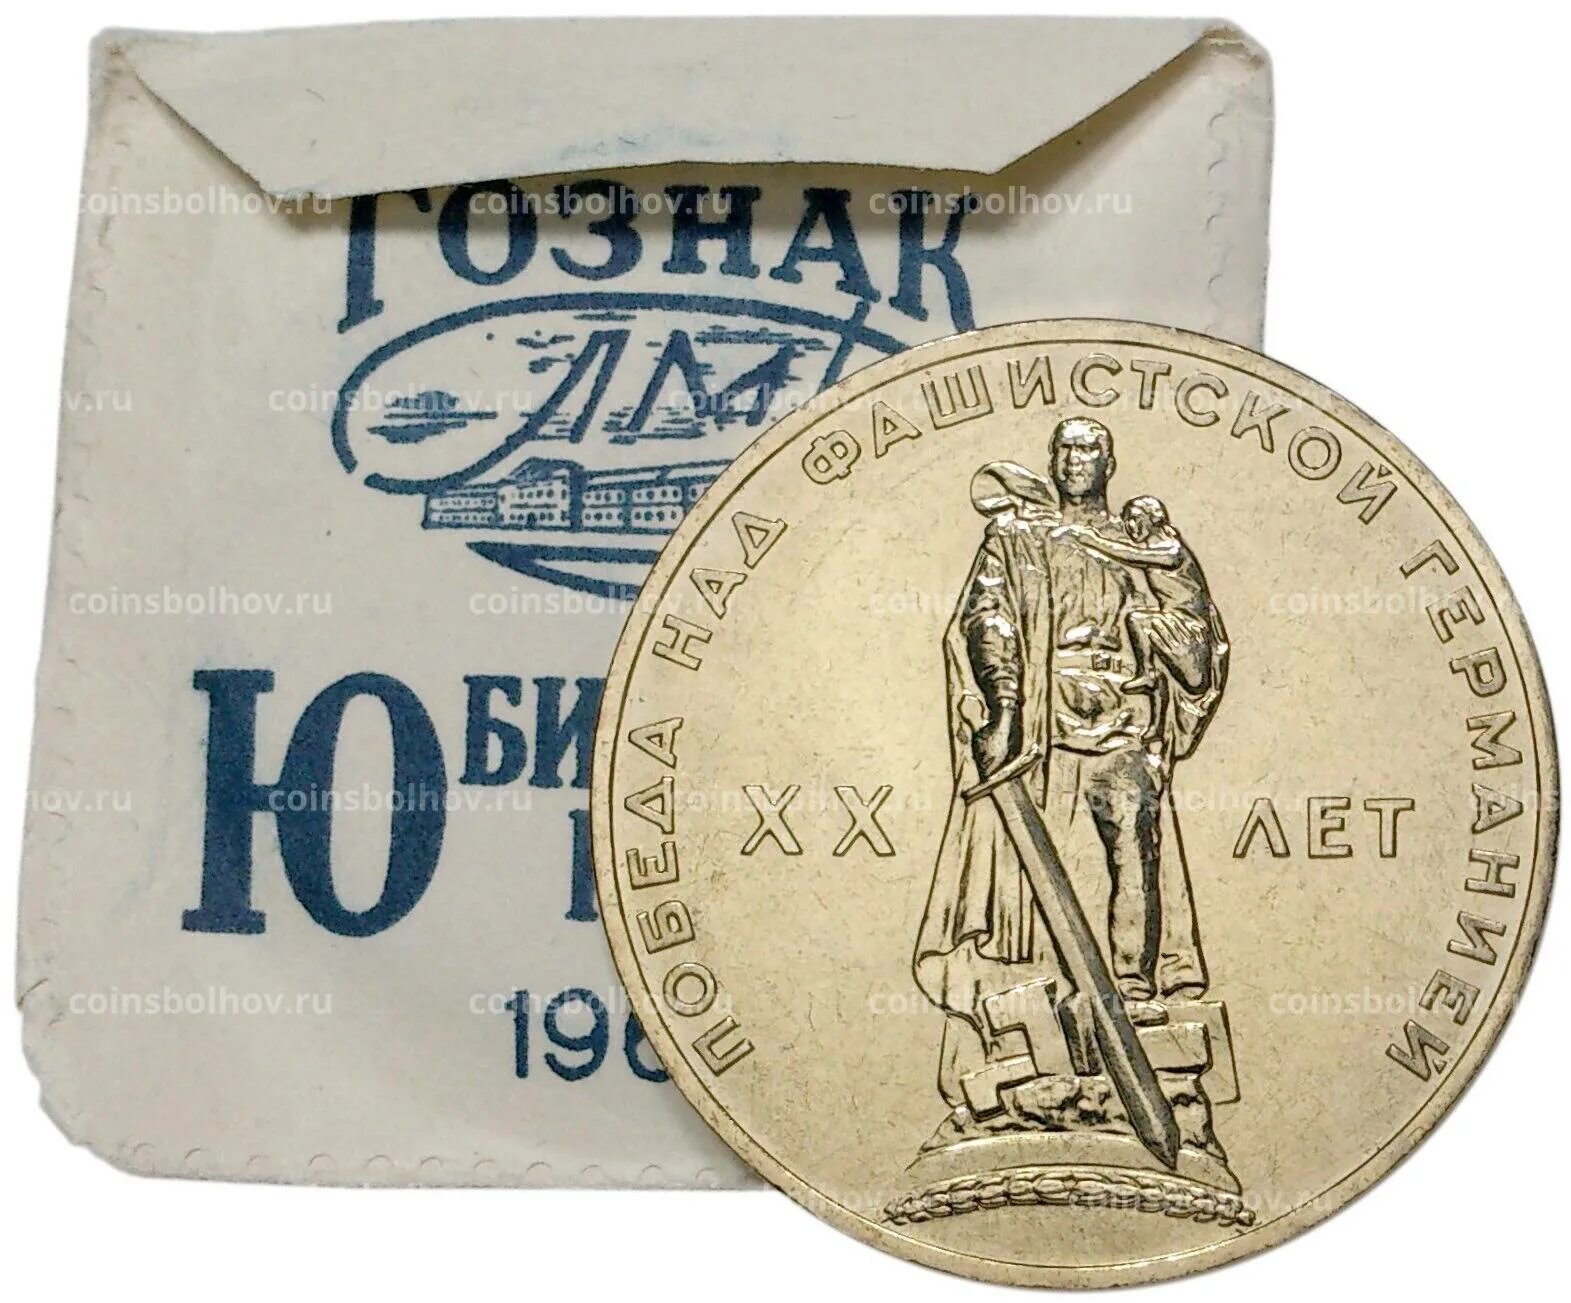 1 Рубль 1965 20 лет Победы - UNC. Царапины на монете. 350 Гр в рублях.